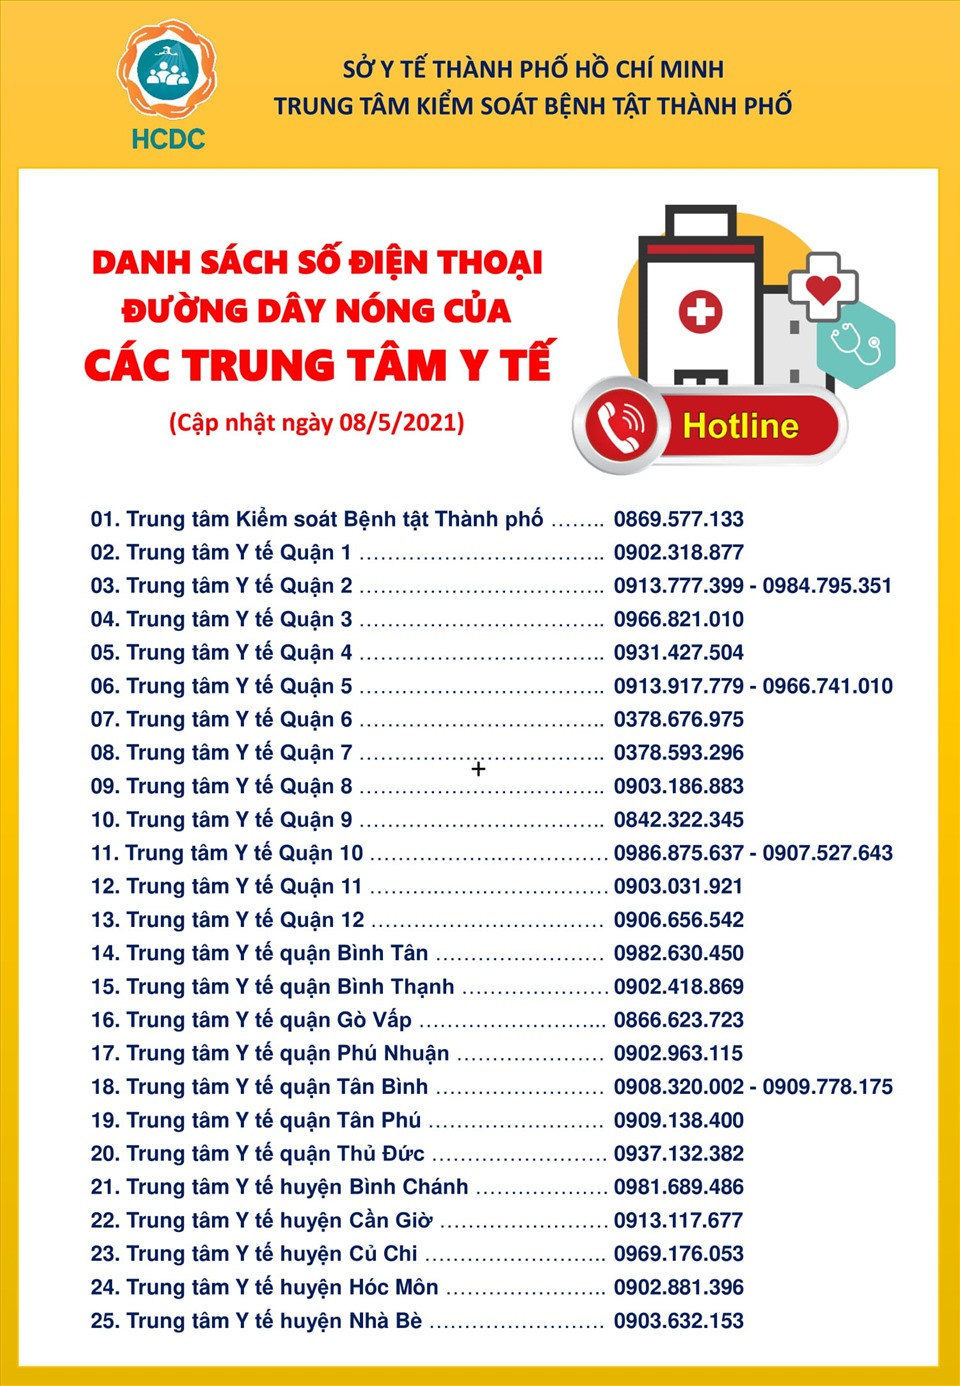 Số điện thoại đường dây nóng của các trung tâm y tế trên địa bàn TPHCM. Ảnh: HCDC